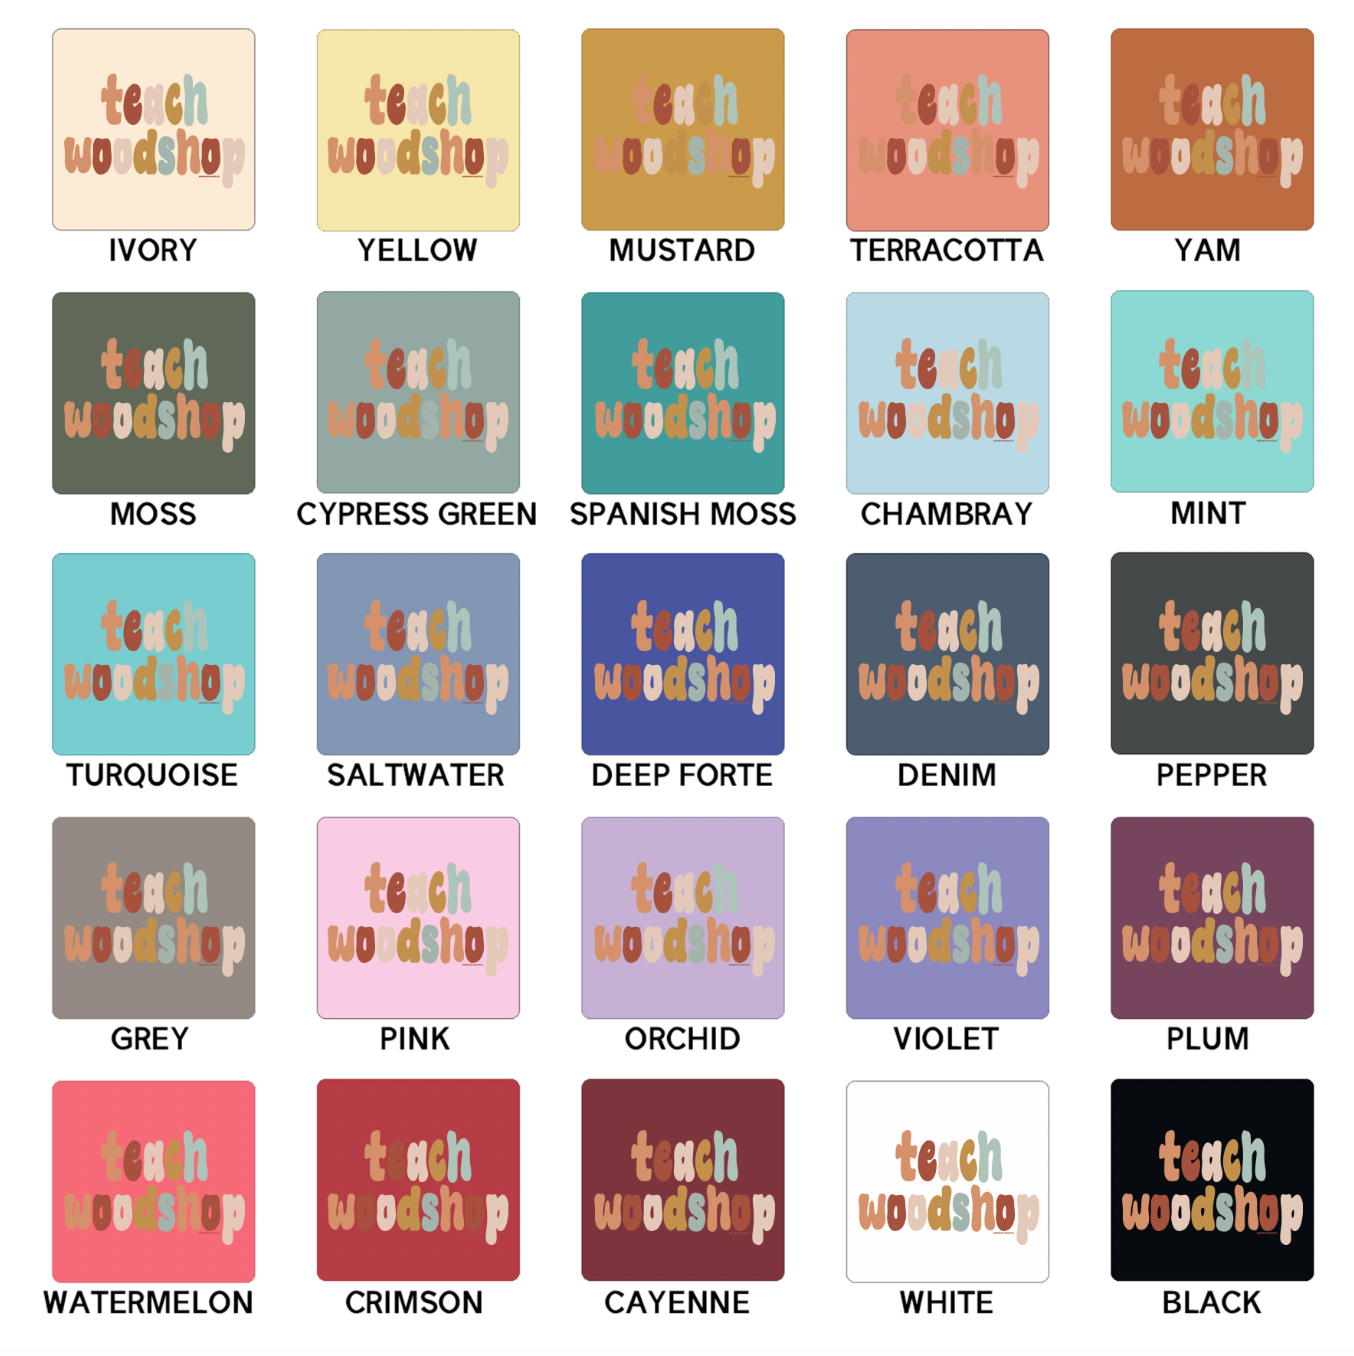 Boho Teach Woodshop ComfortWash/ComfortColor T-Shirt (S-4XL) - Multiple Colors!